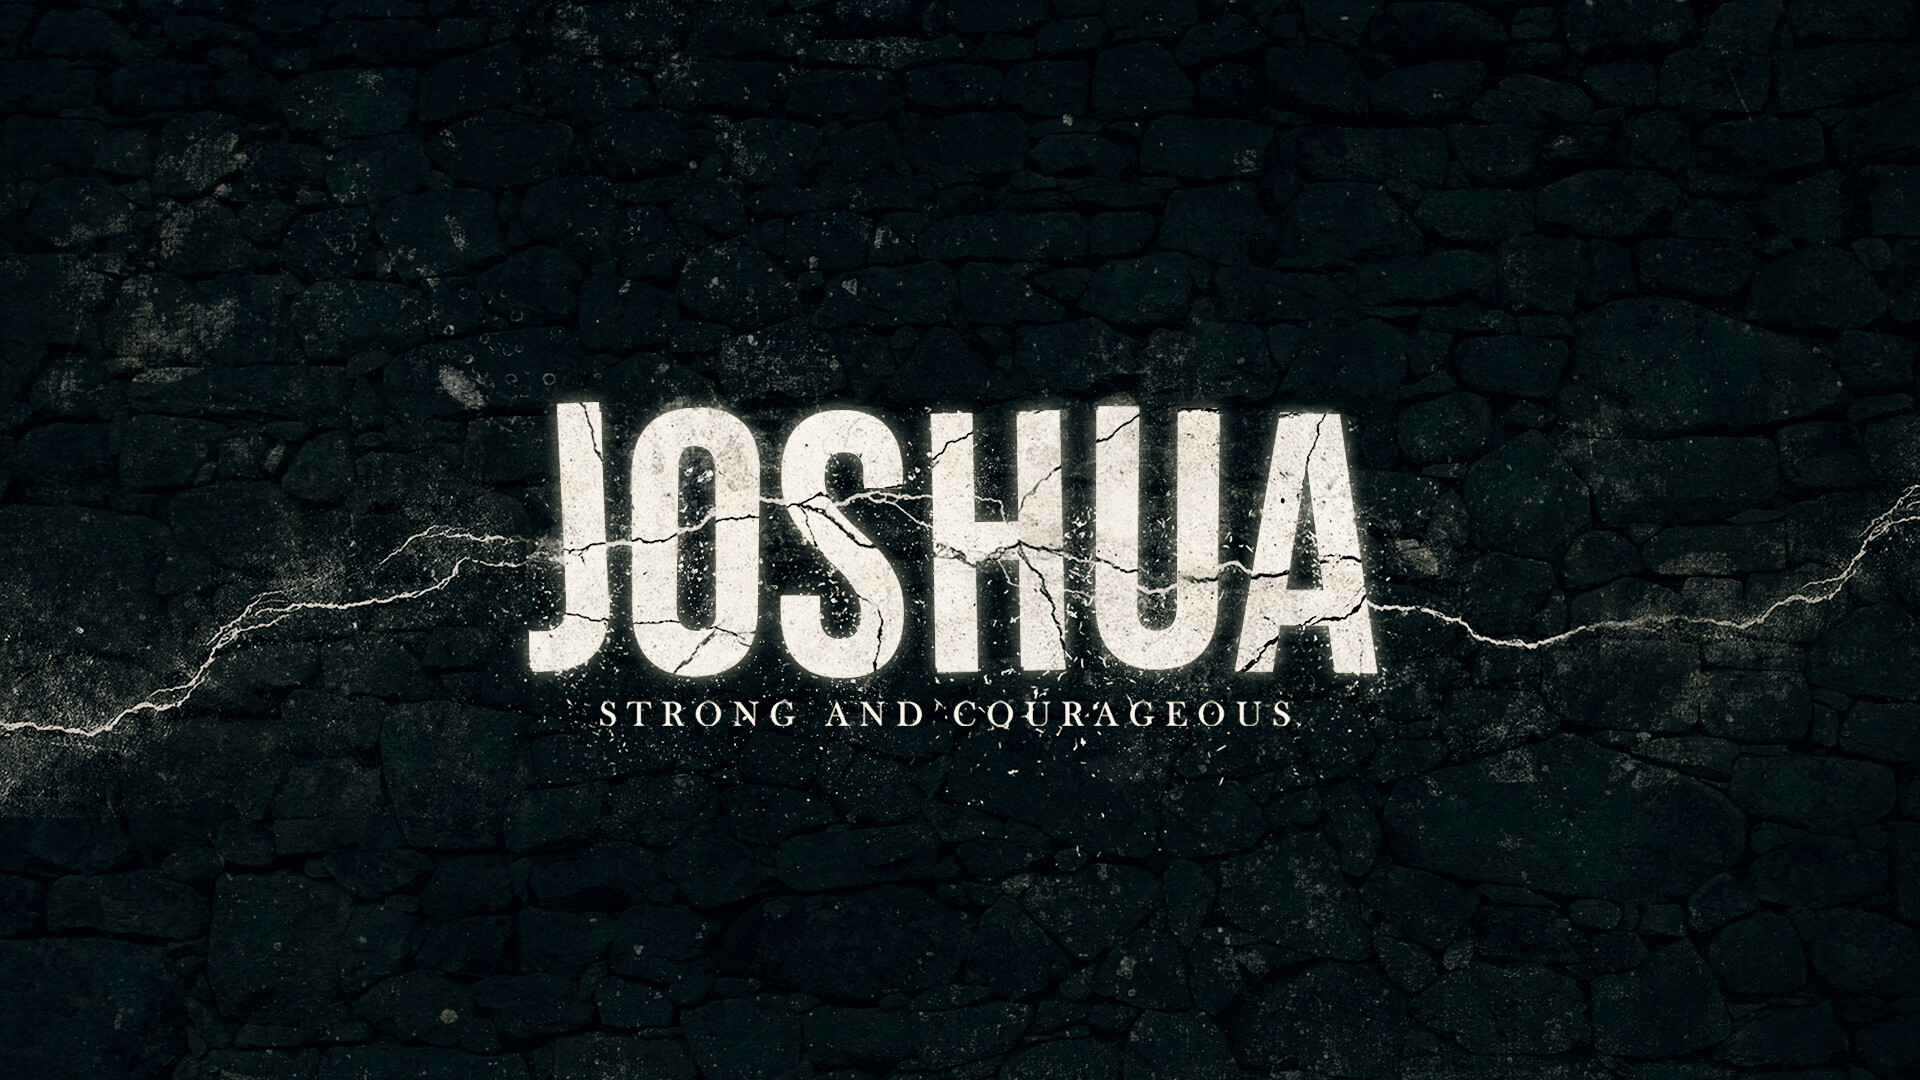 Introducing Joshua: Part 1